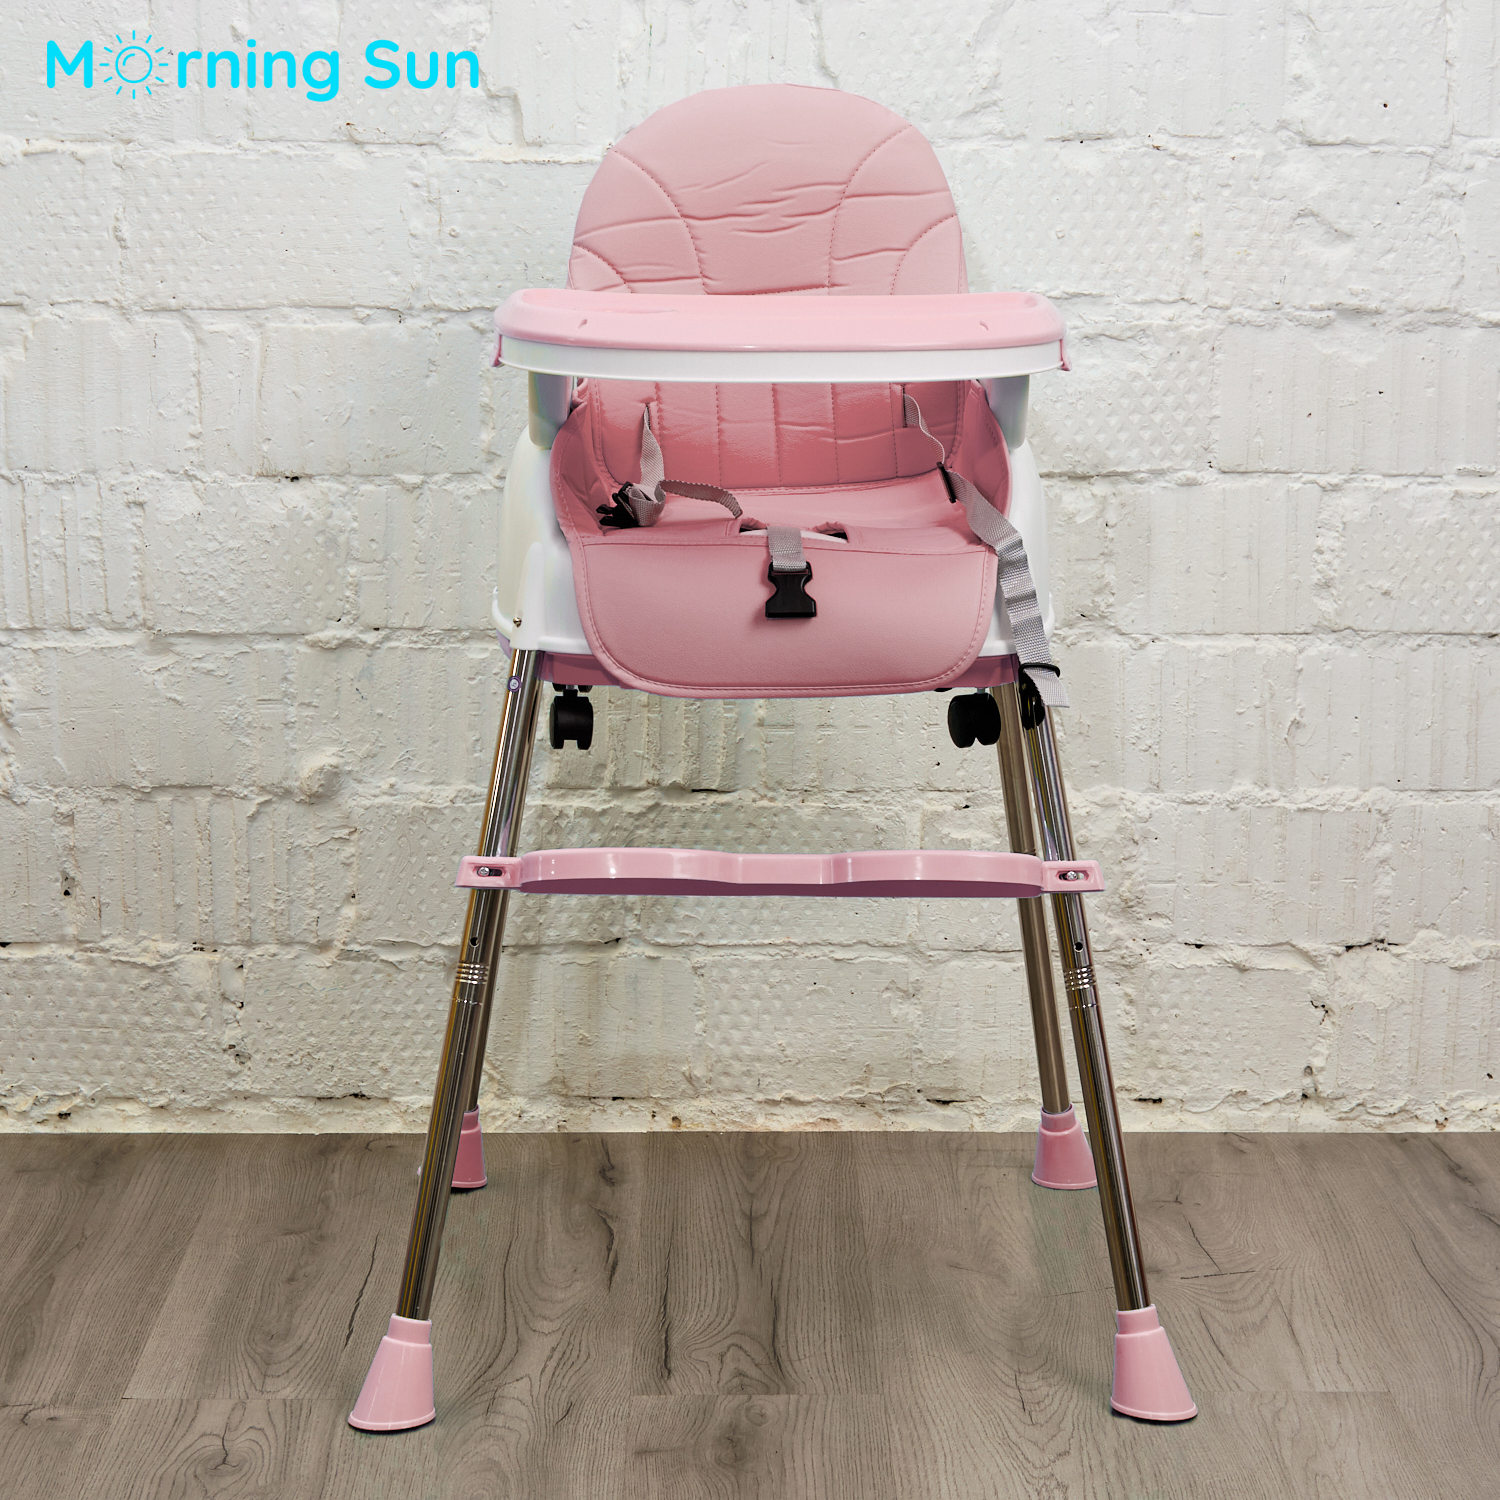 Стульчик для кормления Morning Sun складной с колесиками Modern розовый - фото 3